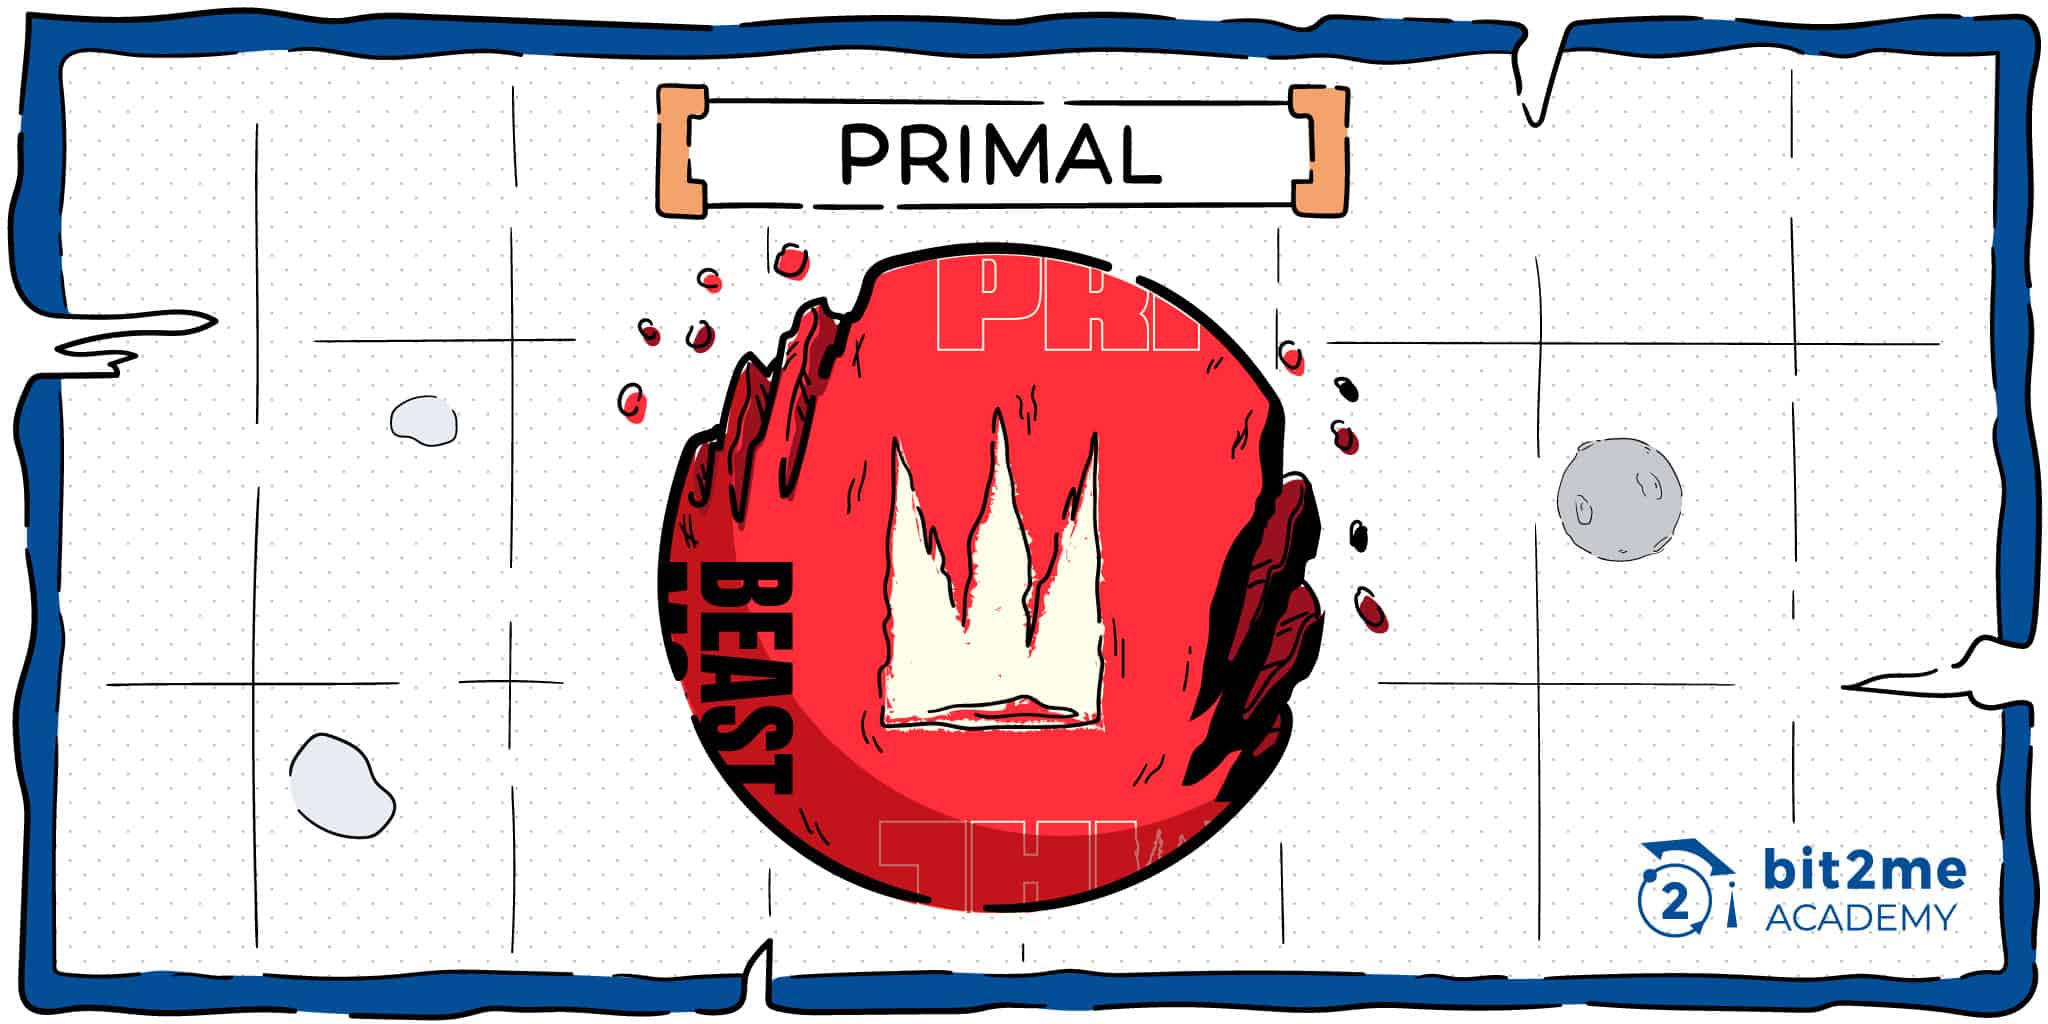 ¿Qué es Primal?